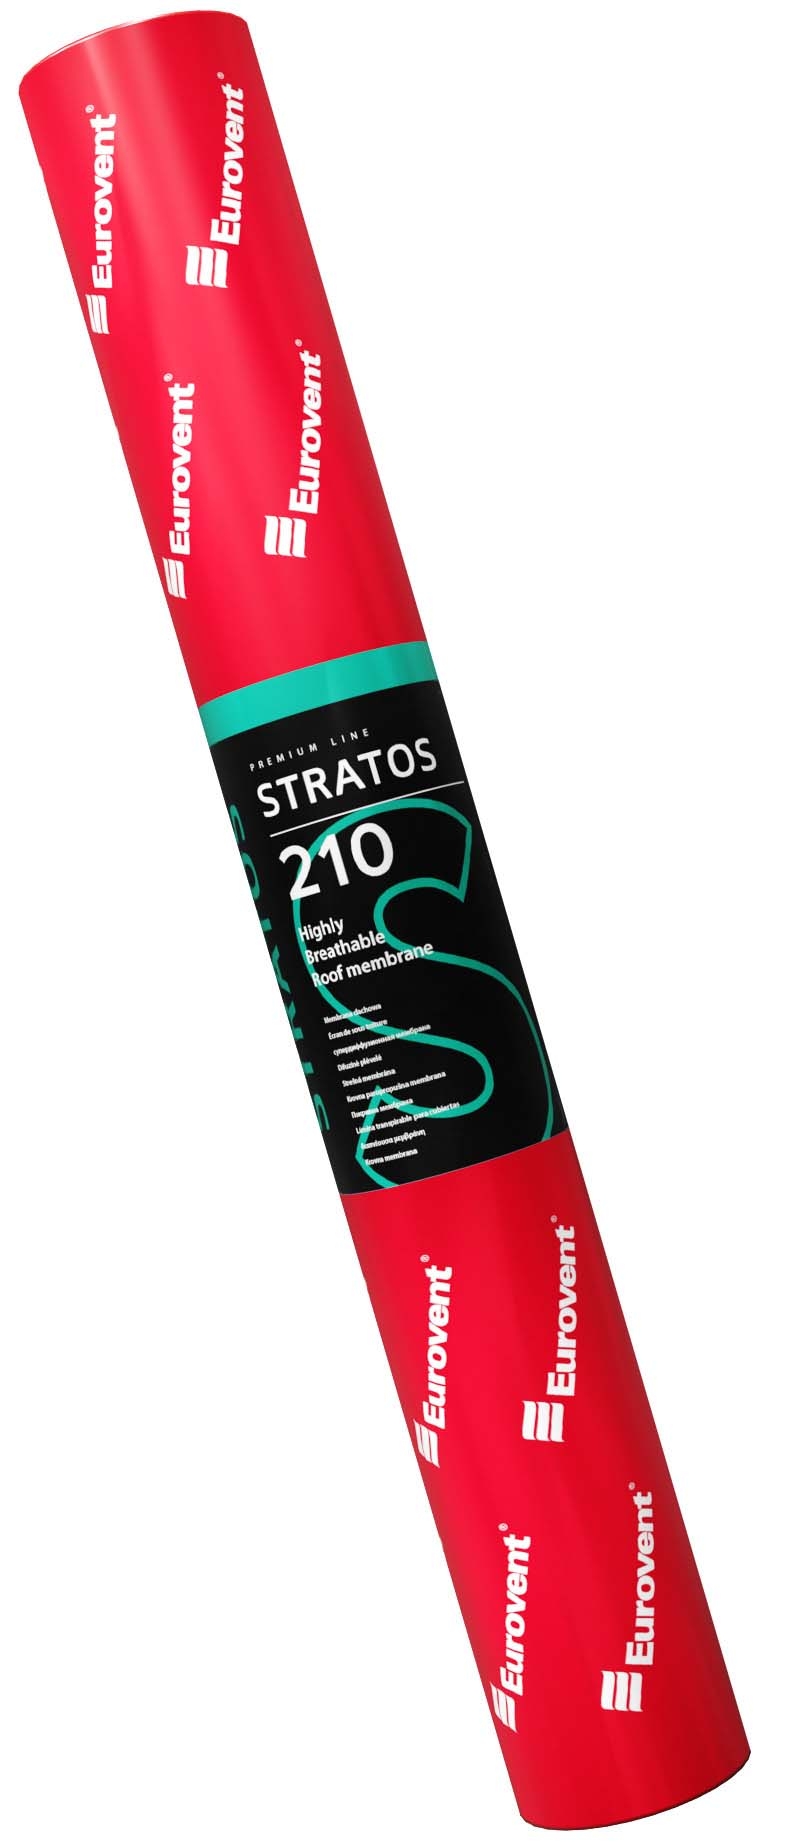 Rolka membrany STRATOS zawinięta w folie opakowaniowa koloru czerwonego z etykietą firmy Eurovent